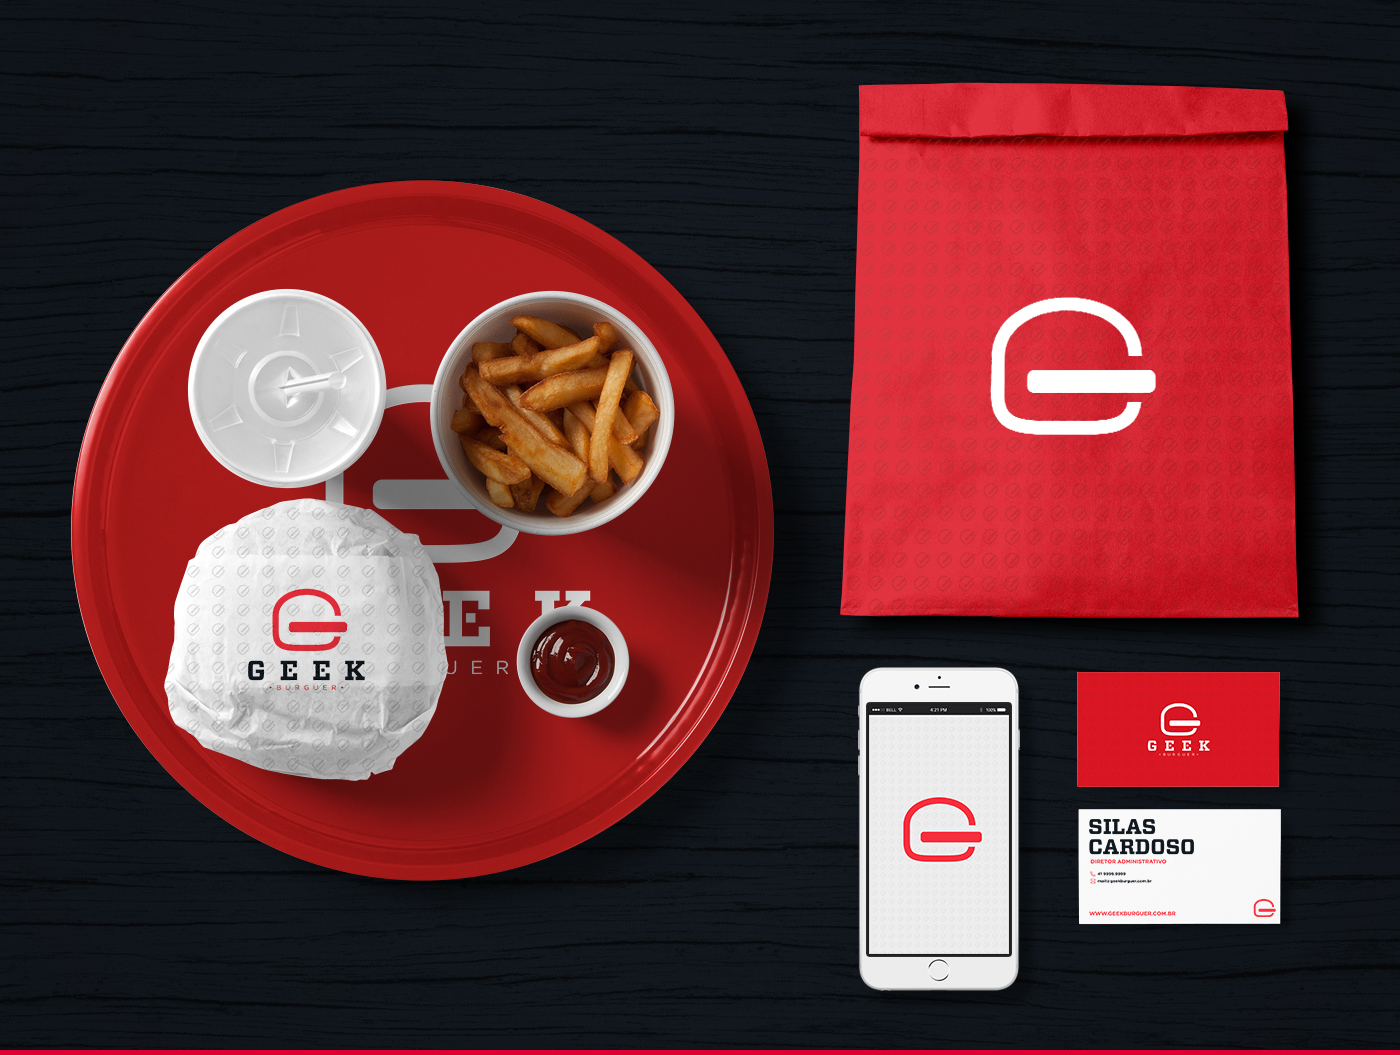 burger restaurant Geek Burguer diner Food  logo red brand